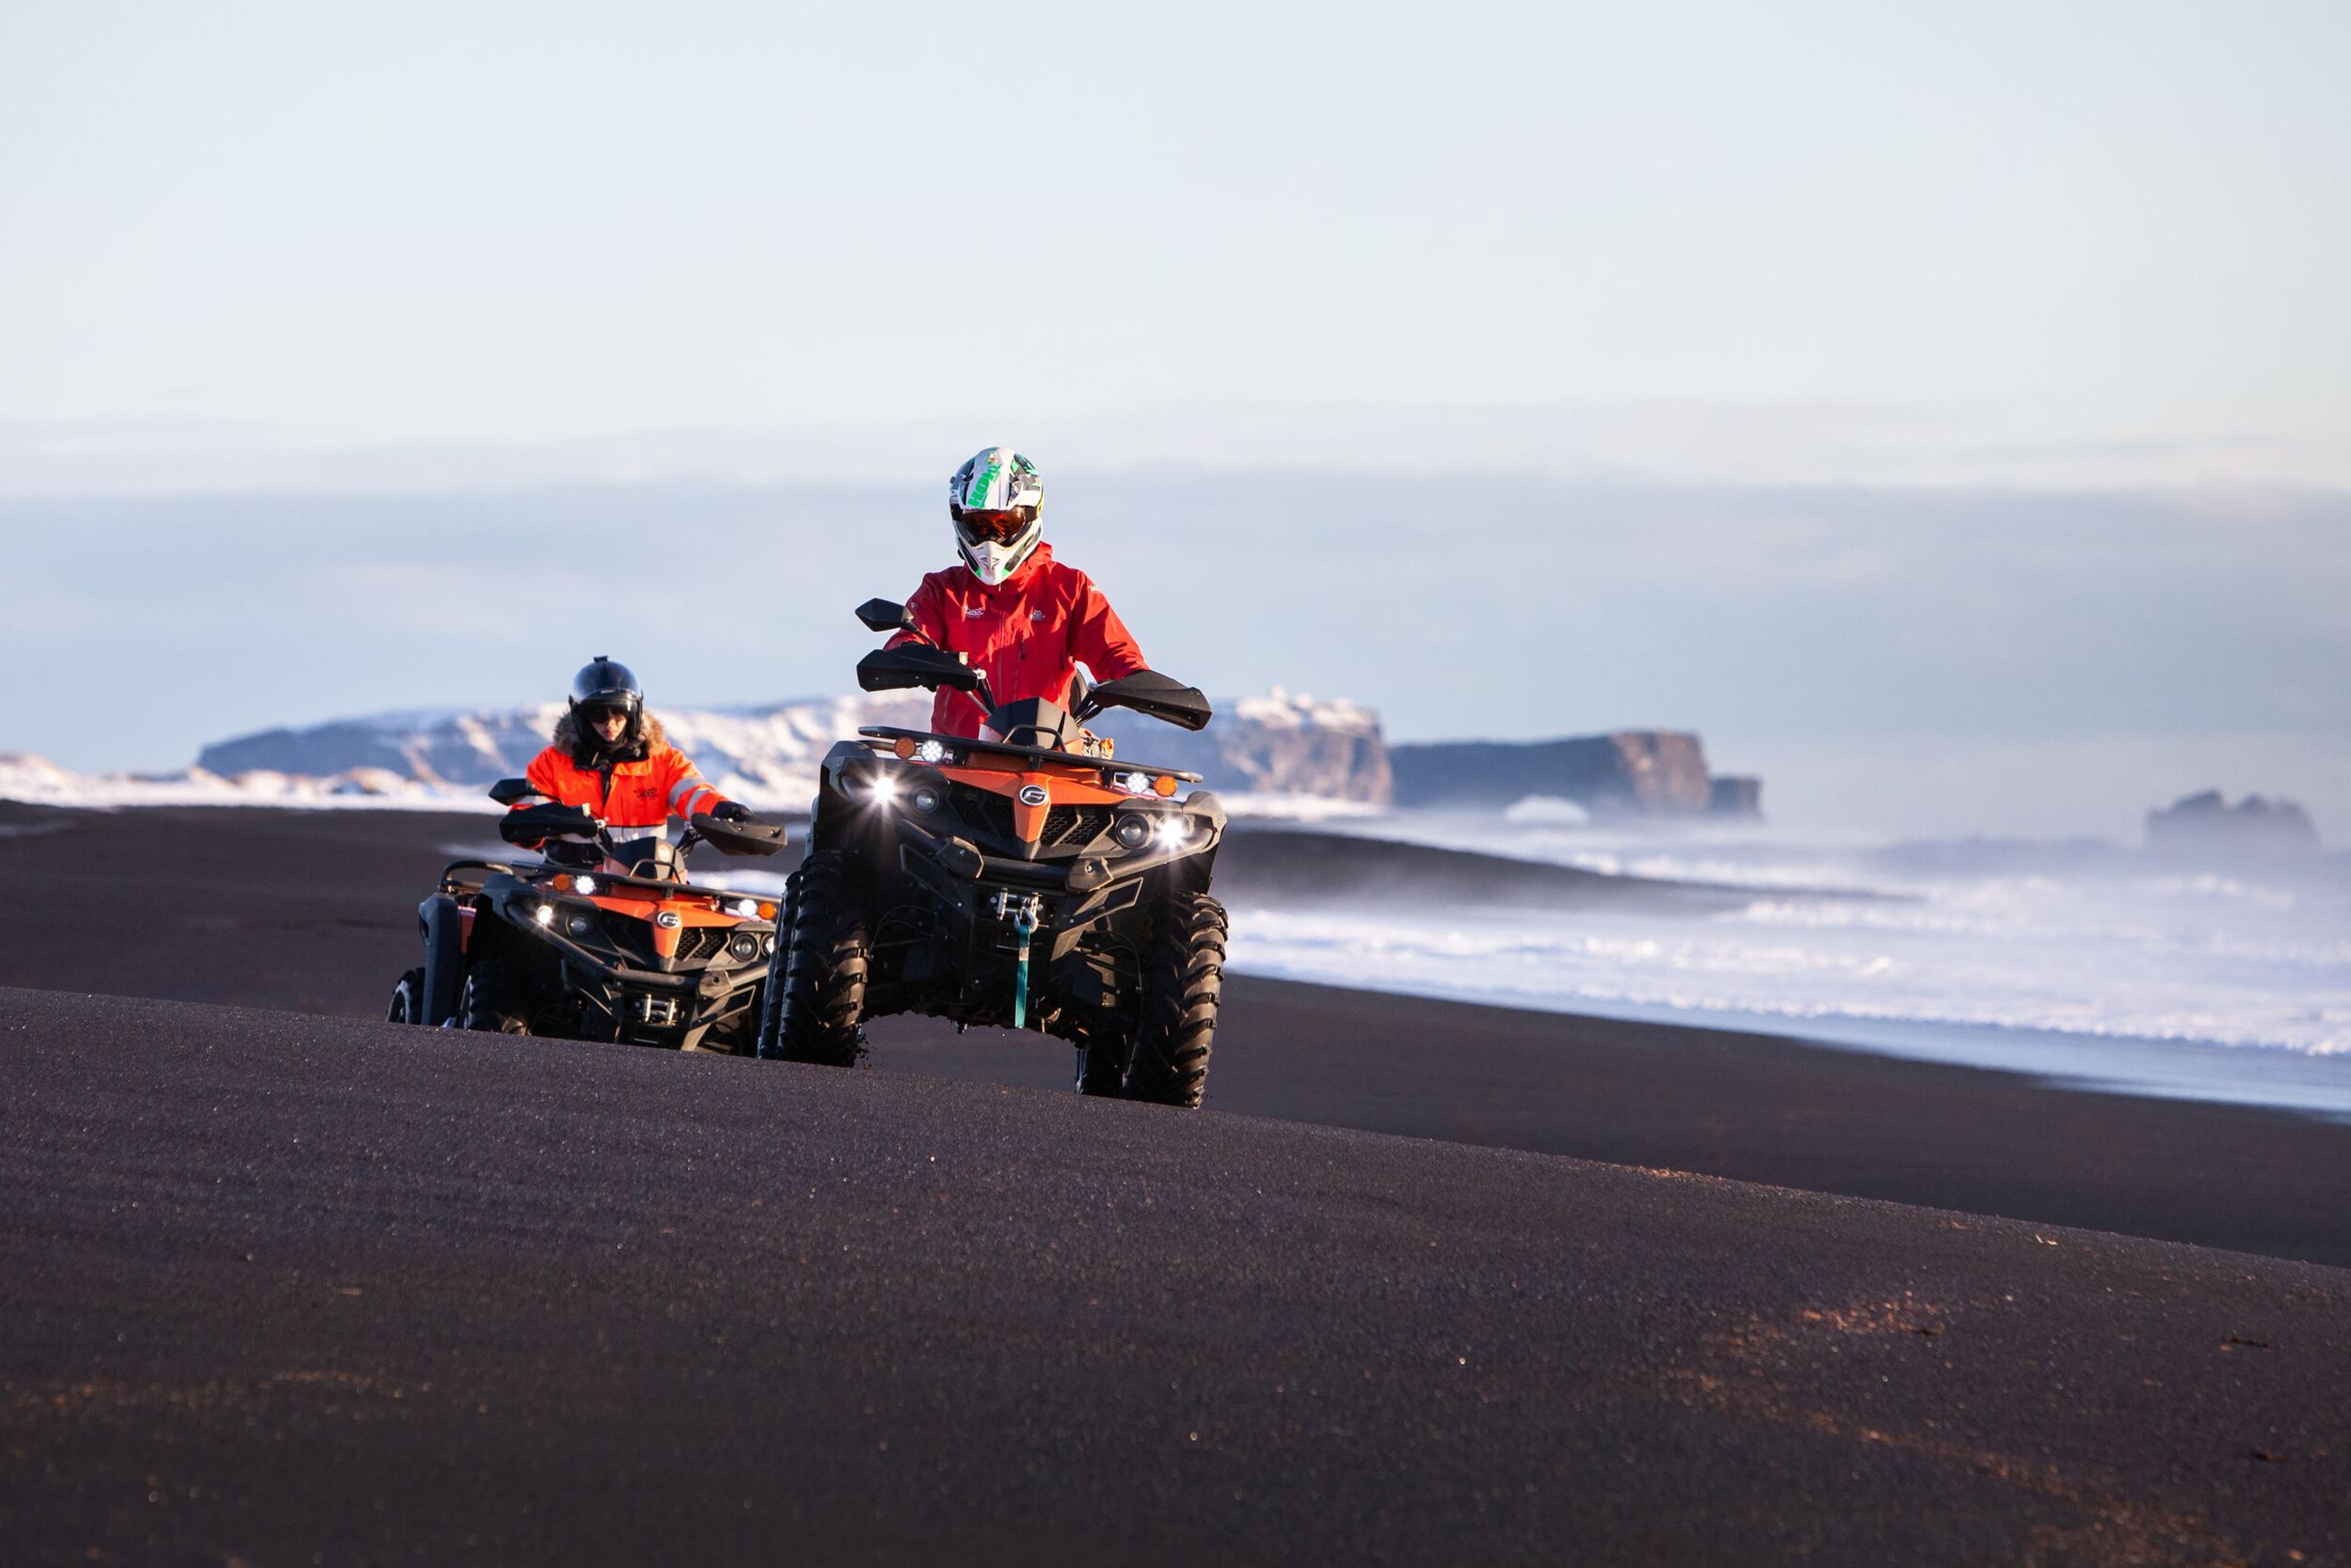 Duo ATV Adventure on Iceland's Iconic Black Beaches